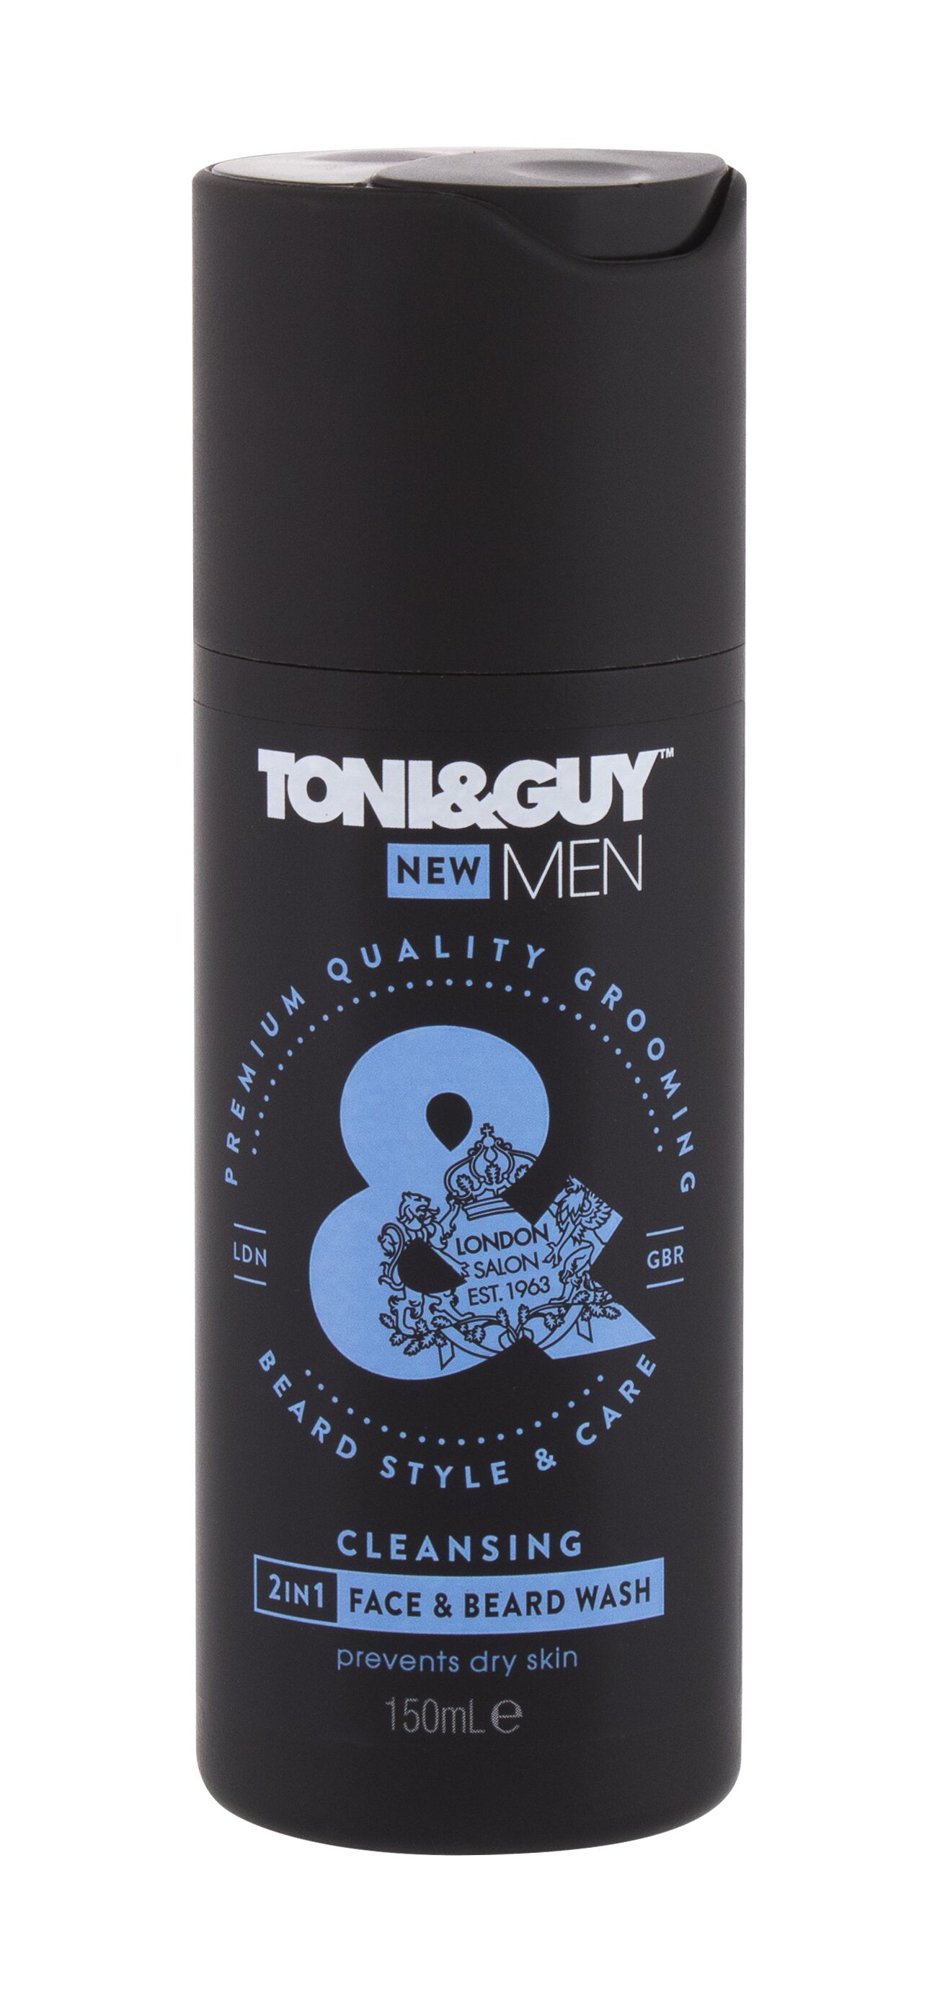 TONI&GUY Men Cleansing 2in1 Face & Beard Wash 150ml valomasis vanduo veidui